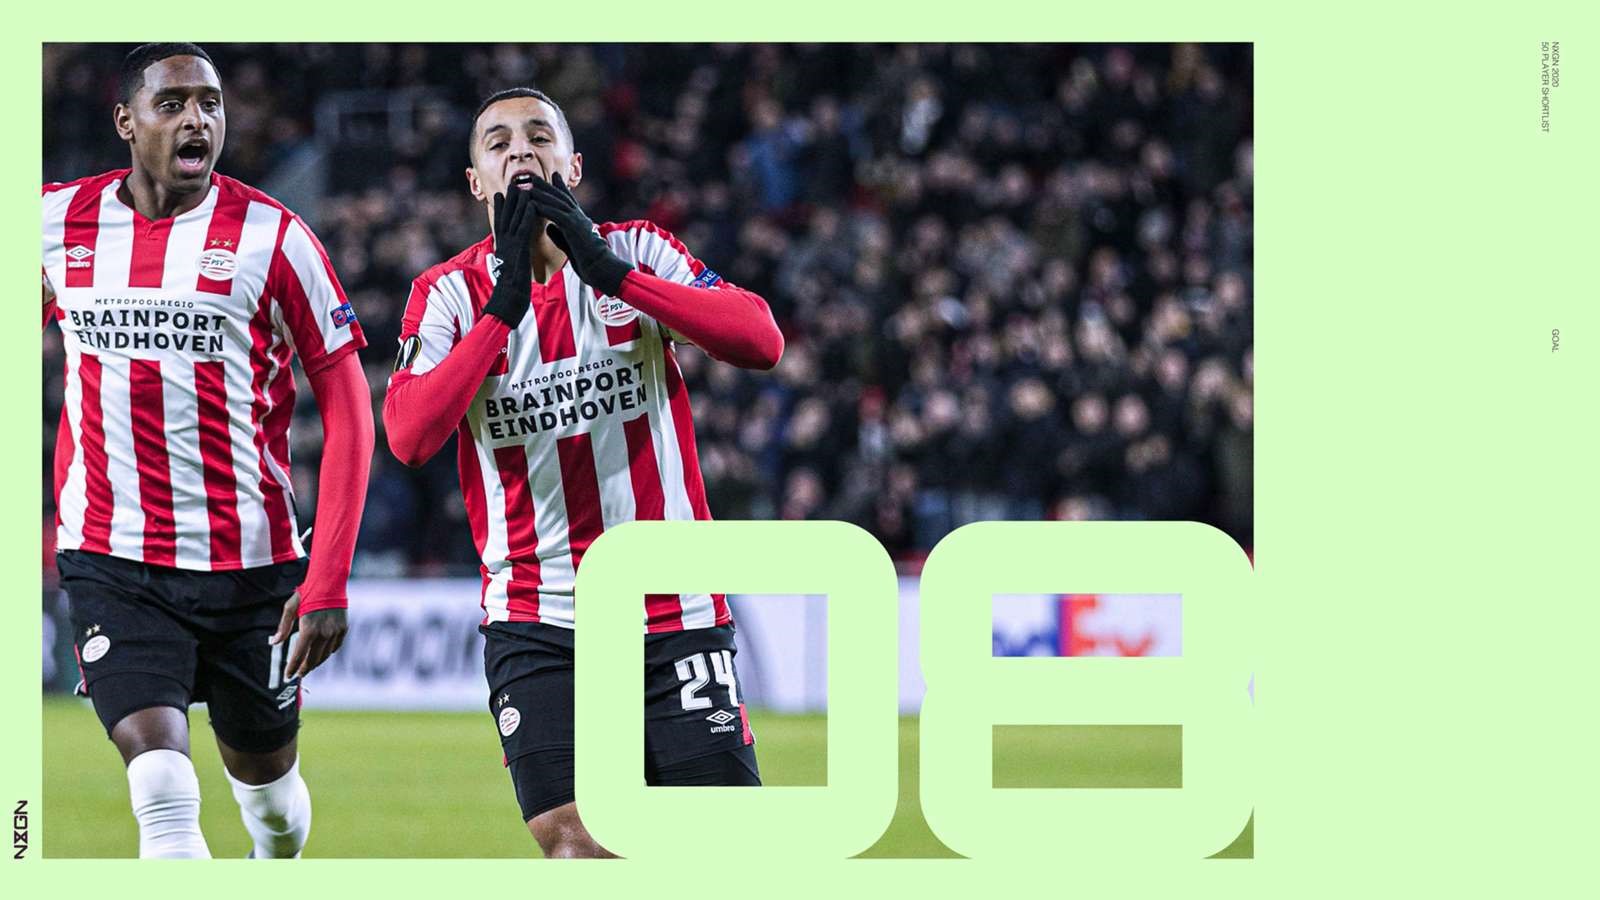 8. Mohamed Ihattaren (PSV). Tiền vệ Mohamed Ihattaren vừa bước sang tuổi 18 trong tháng Hai vừa qua. Dù chỉ vừa có trận ra mắt đội một hồi tháng 1.2019, nhưng anh đã trở thành một trong những thành viên quan trọng nhất trong đội hình của PSV.